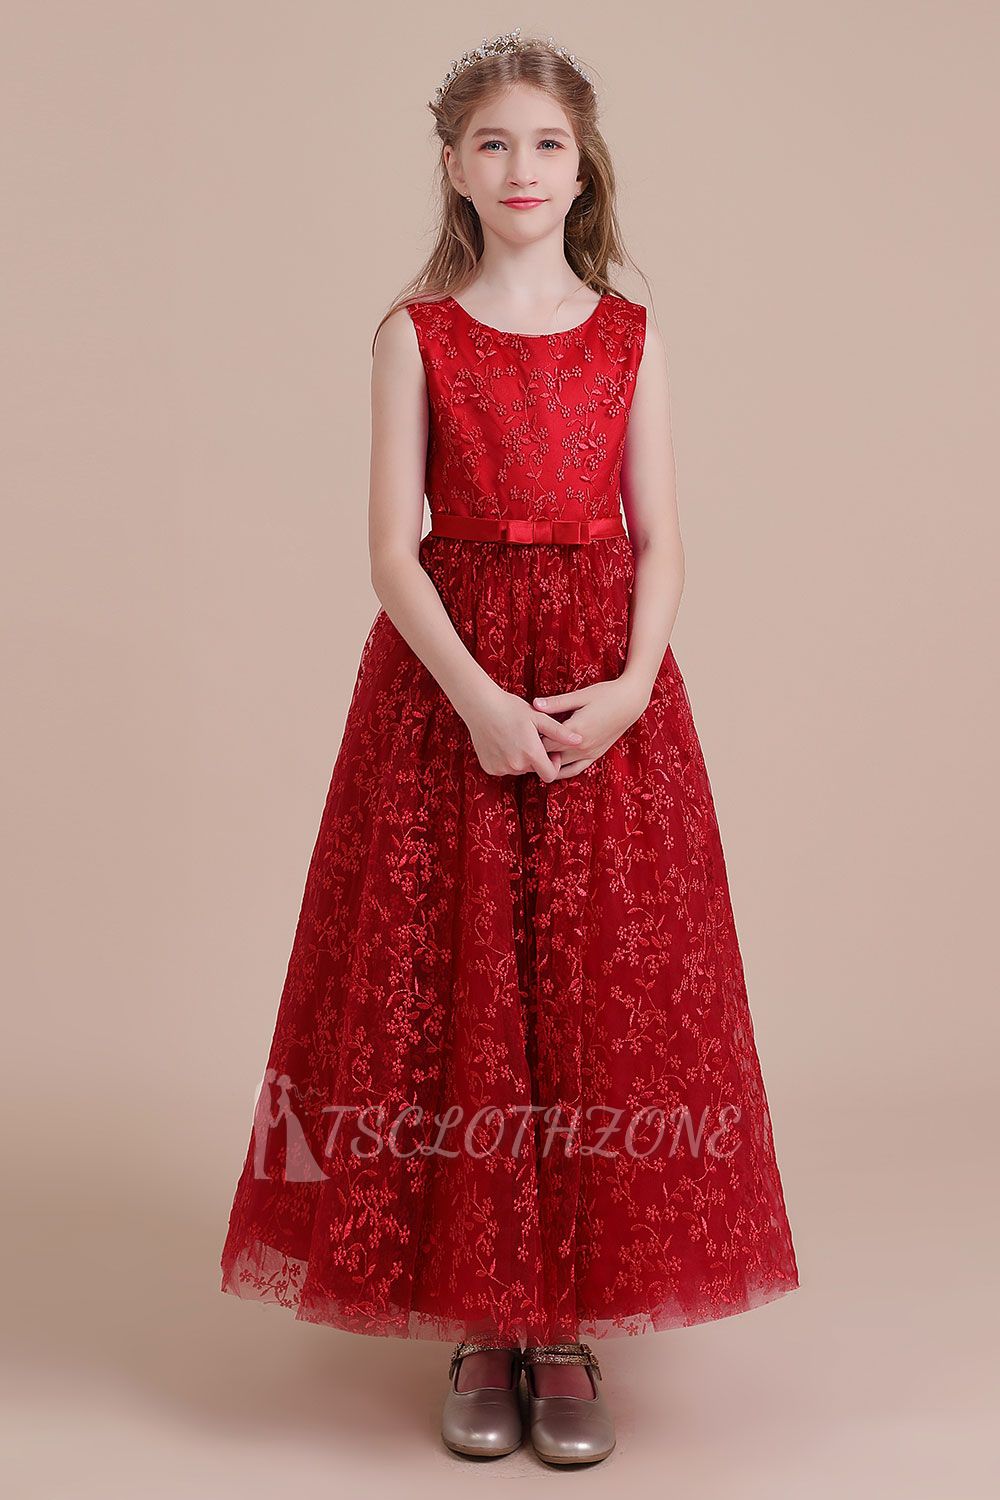 New Arrival Ankle Length Tulle Flower Girl Dress | Elegant A-line Little Girls Dress for Wedding